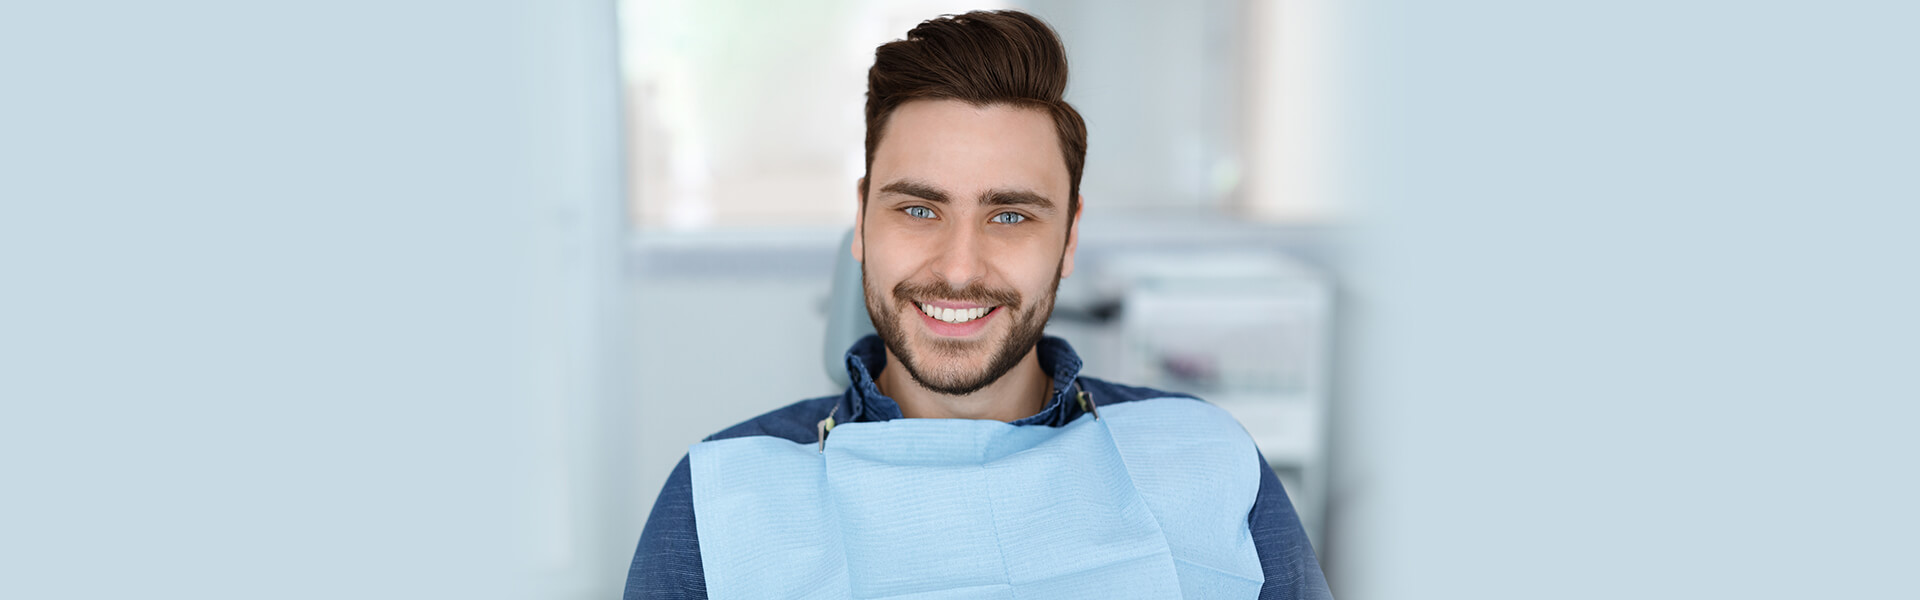 5 Benefits of Preventive Dental Care in Dentistry